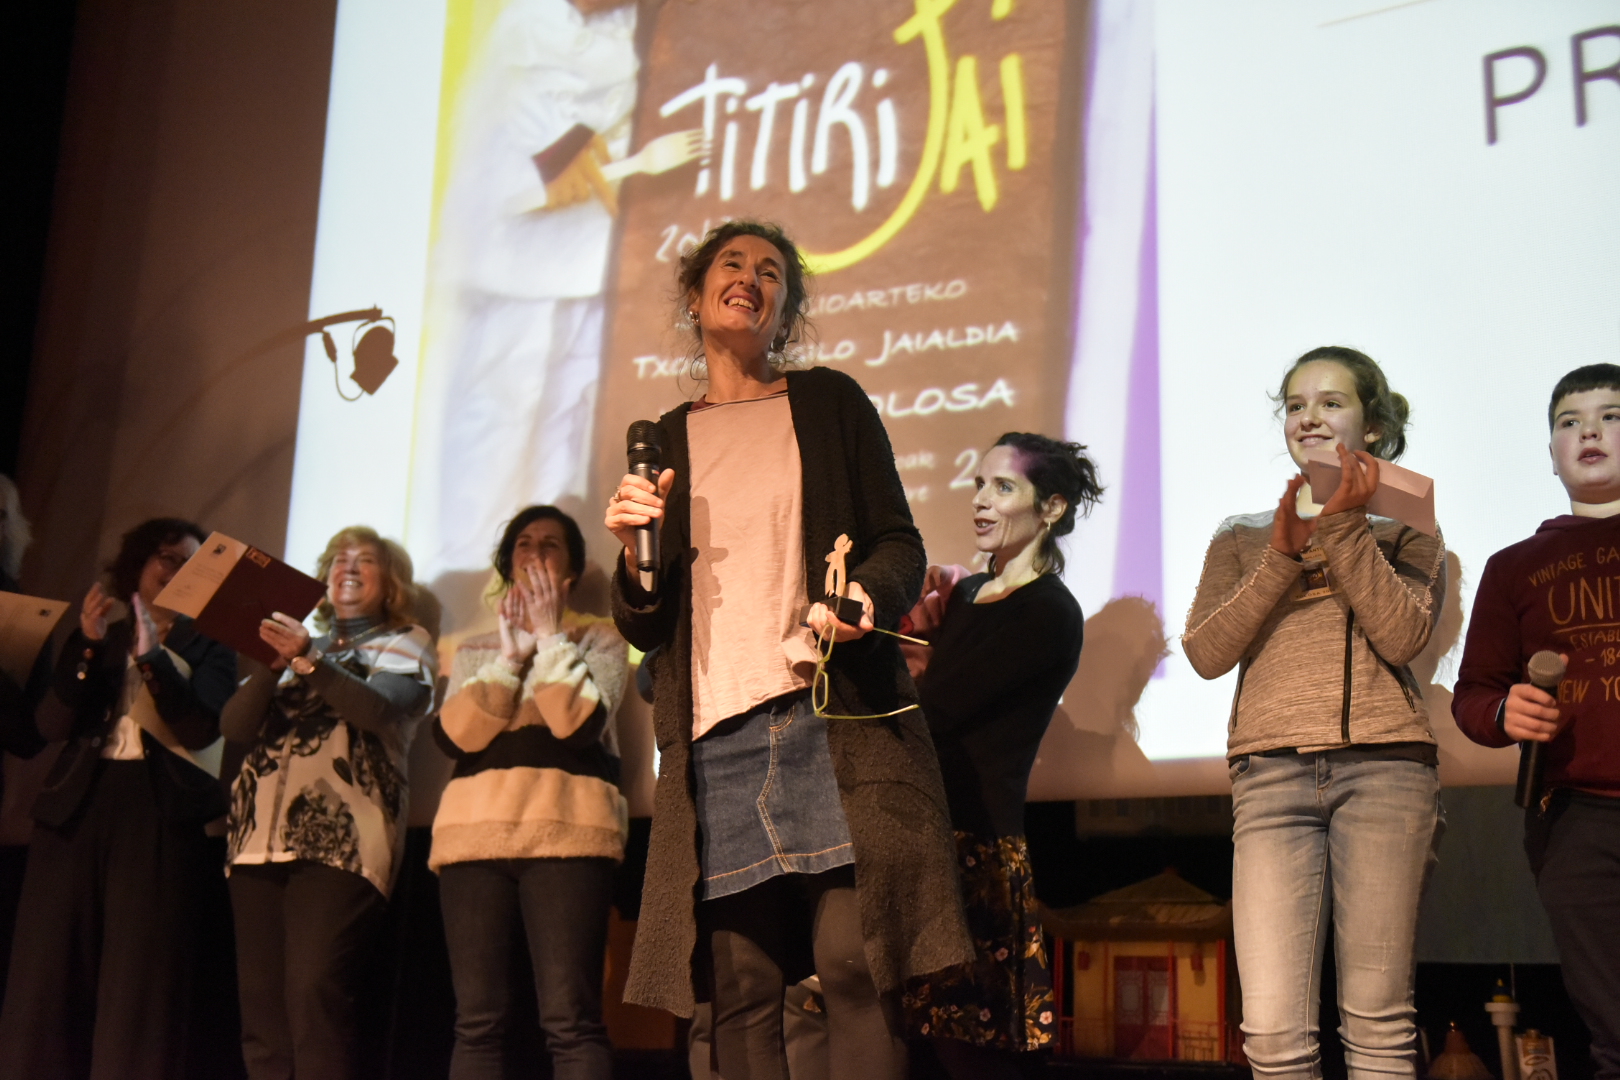 
Sonia Muñoz recoge el premio para el mejor espectáculo en el Festival de Títeres de Tolosa, 2018.